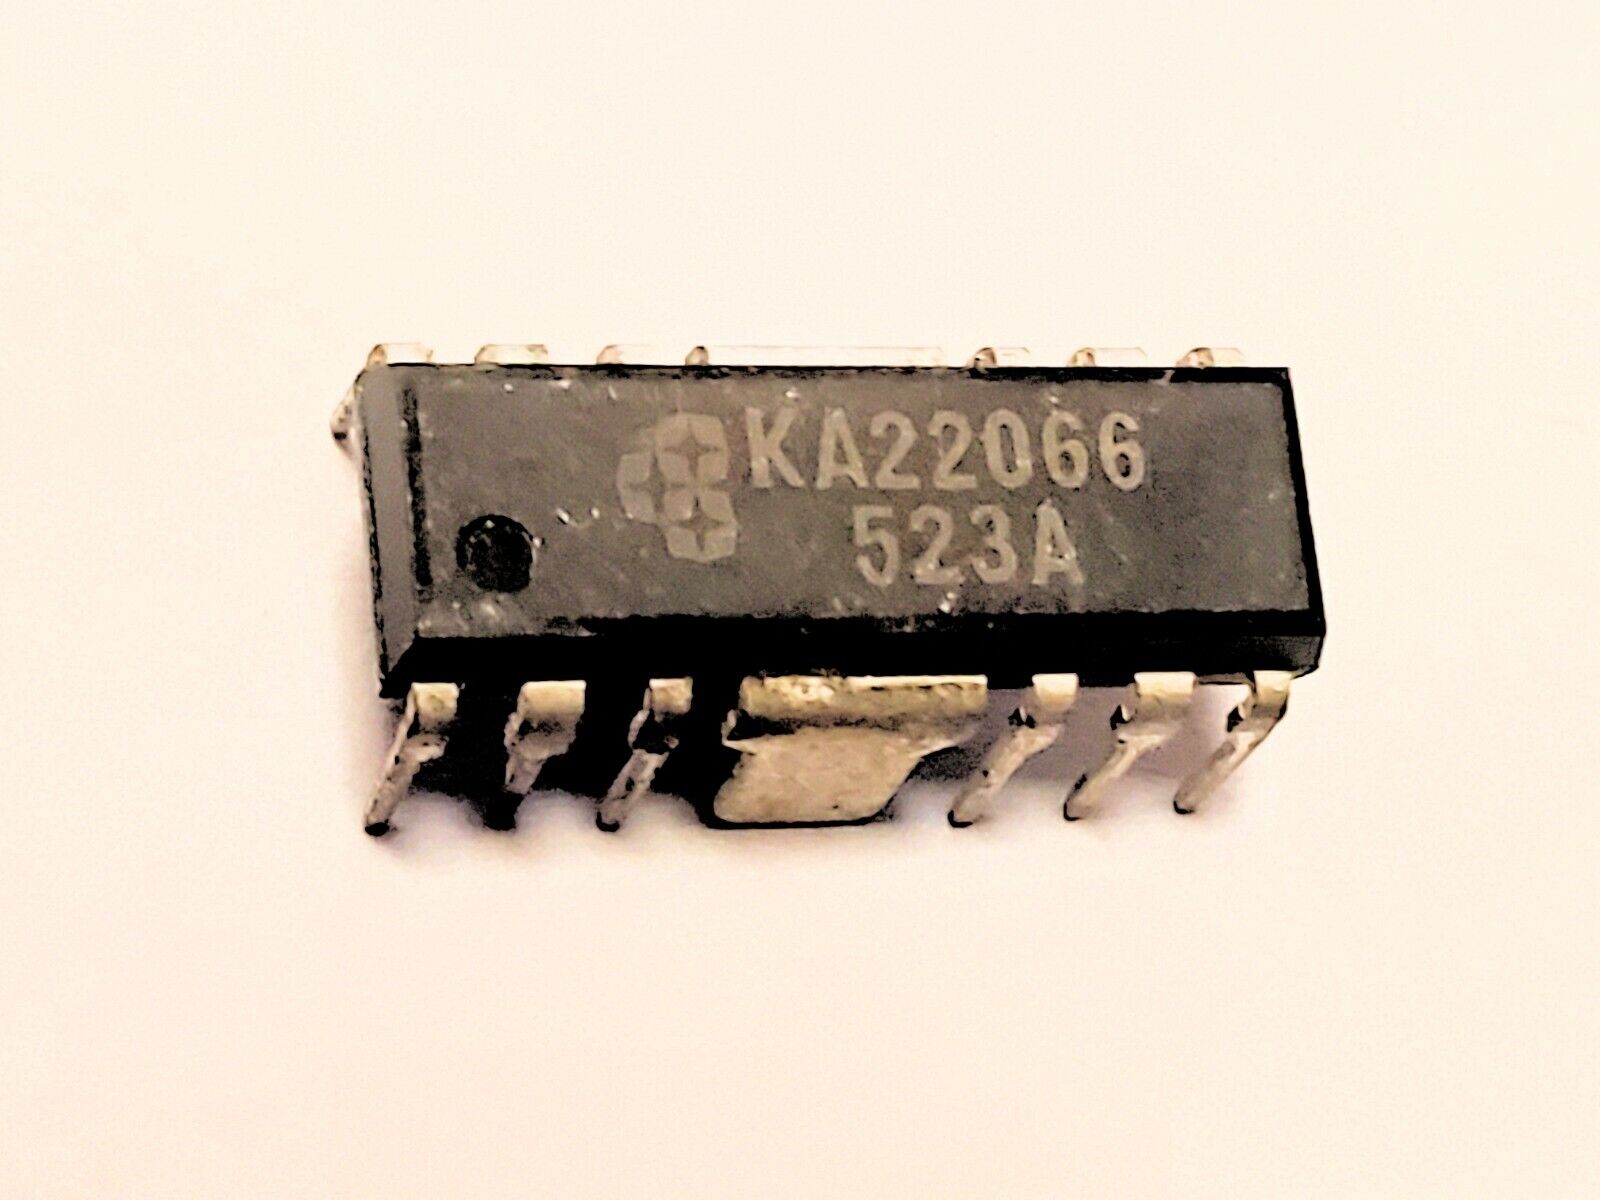 KA22066 